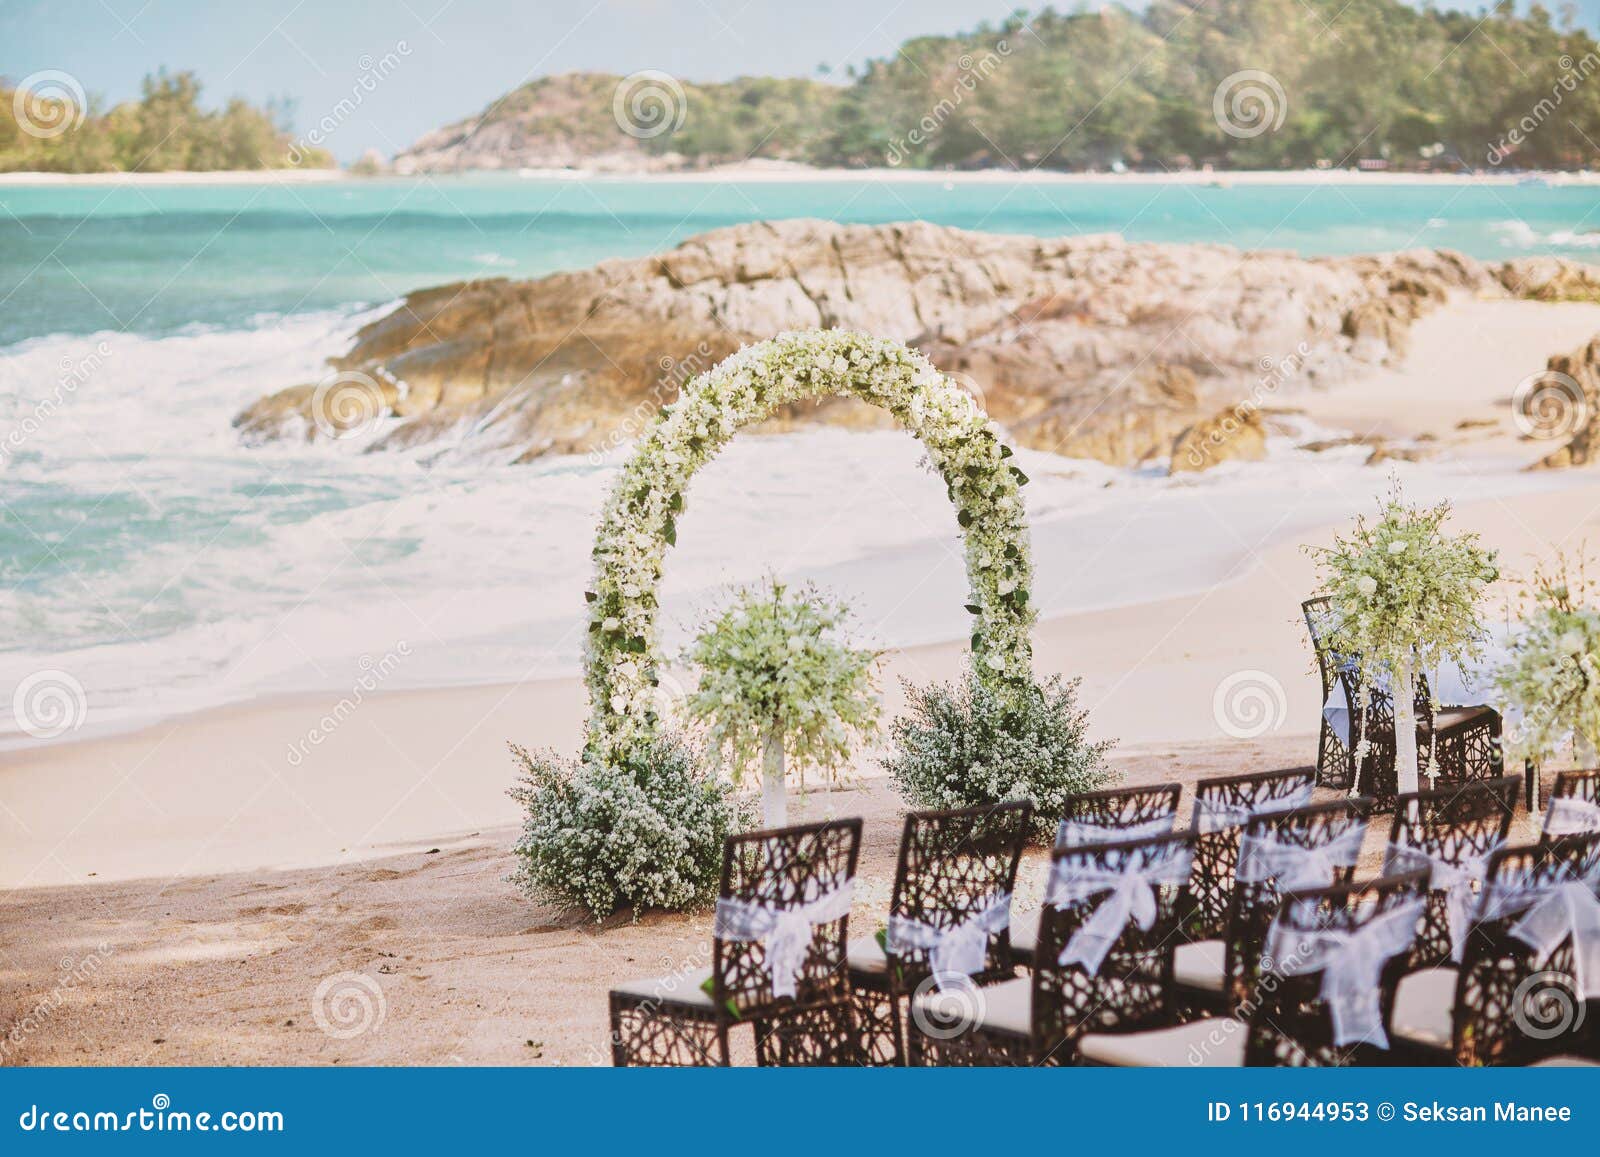 Beautiful Beach Wedding Flower Arch Setting For Wedding Venue With